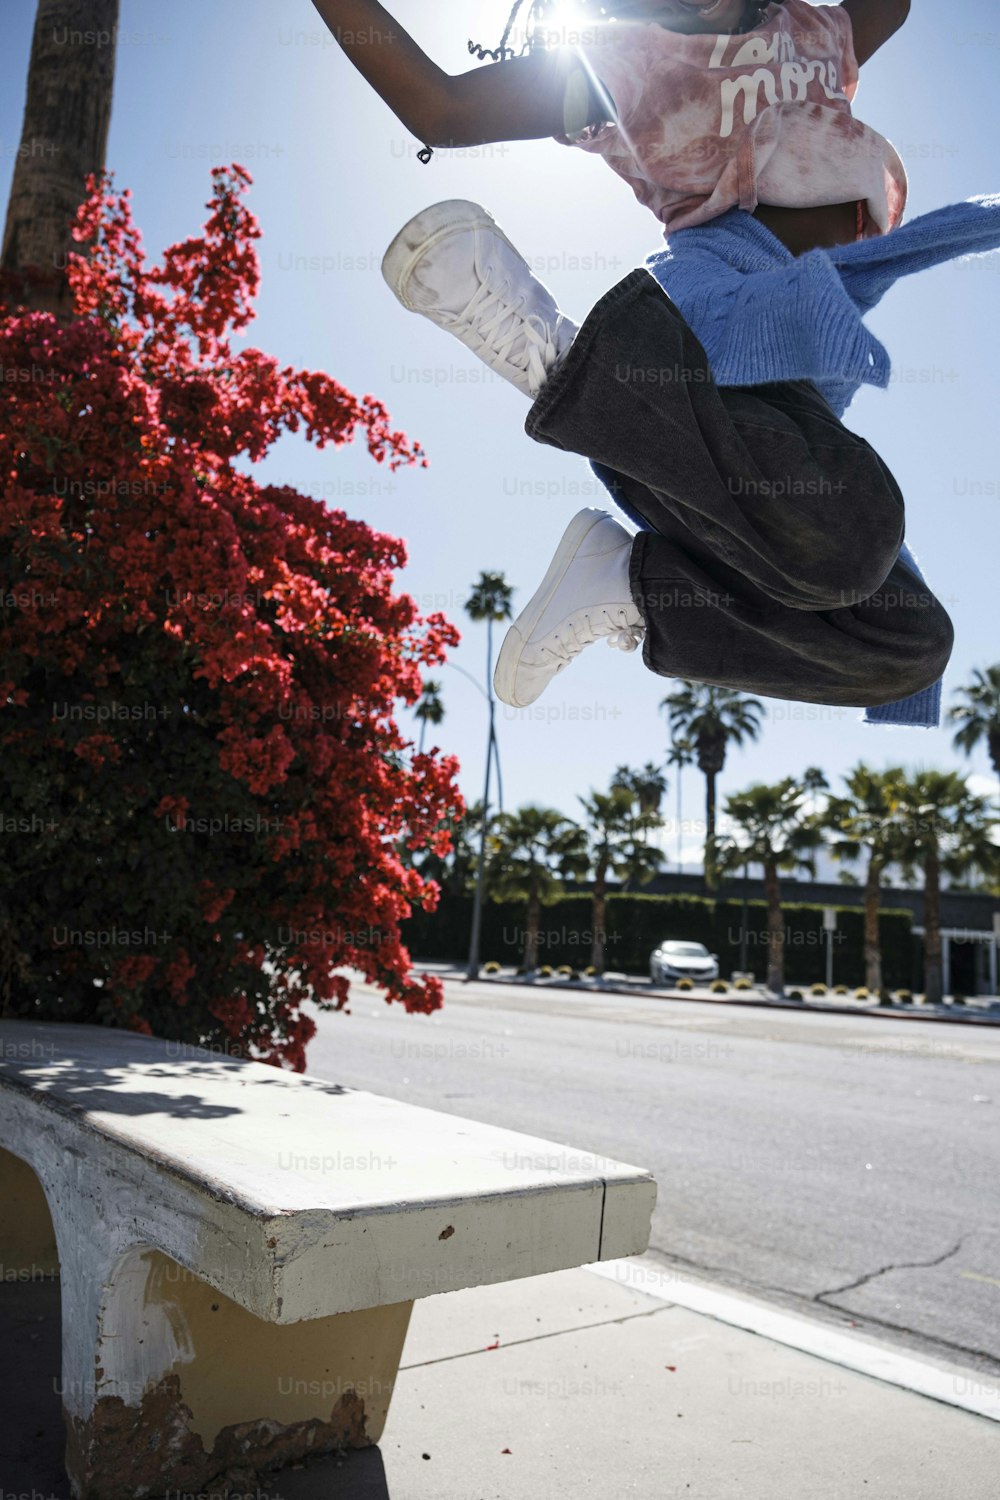 una persona che salta in aria su uno skateboard